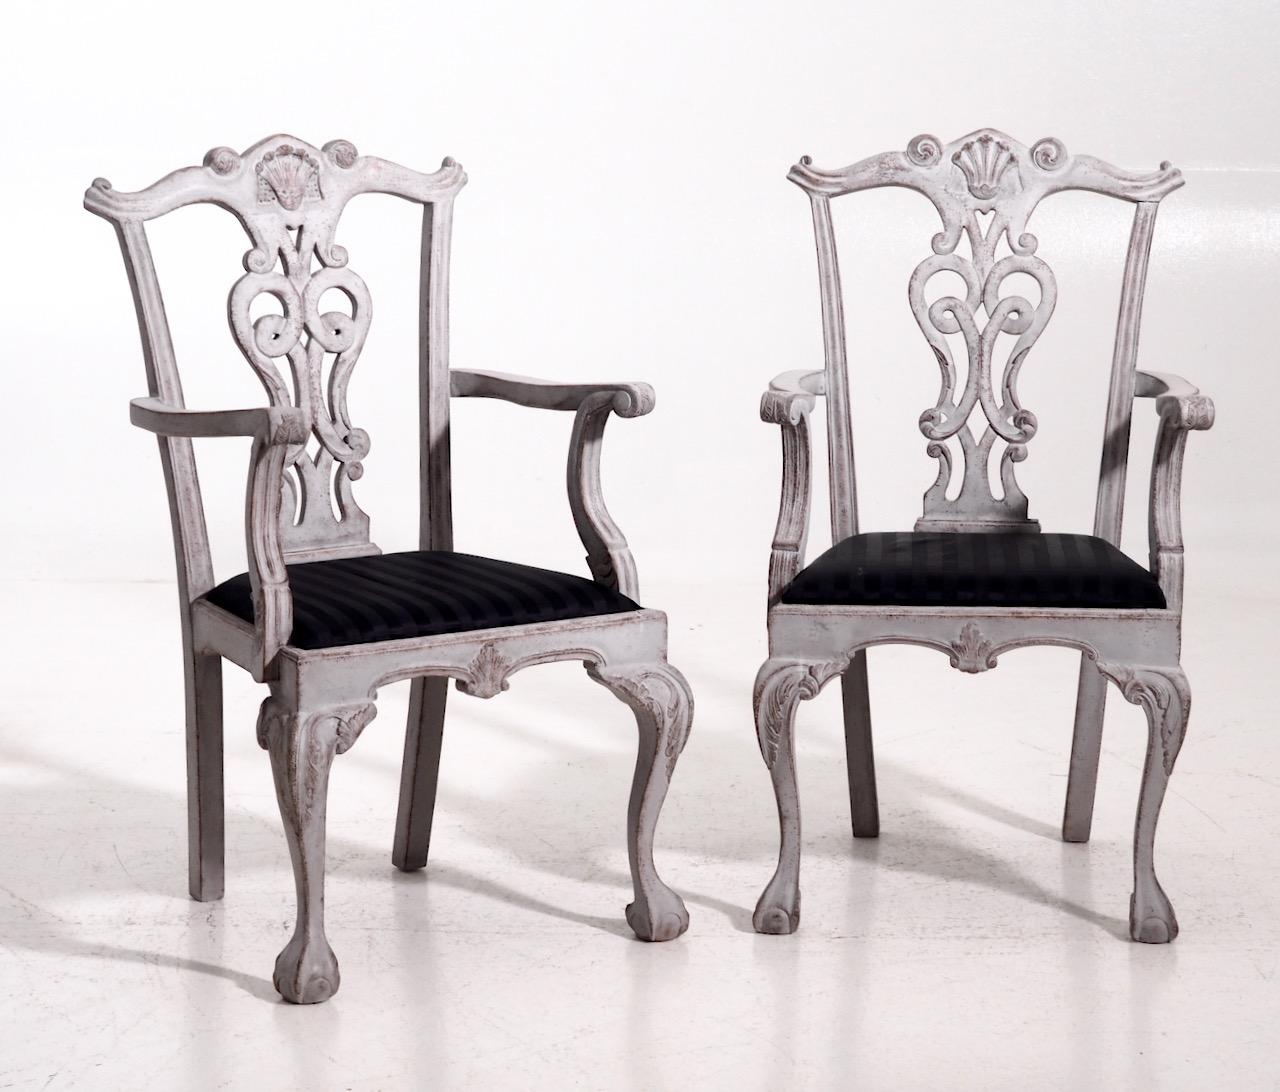 Schöner Satz von acht großen Stühlen (darunter zwei Sessel), reich geschnitzt, Anfang 20. Jahrhundert.